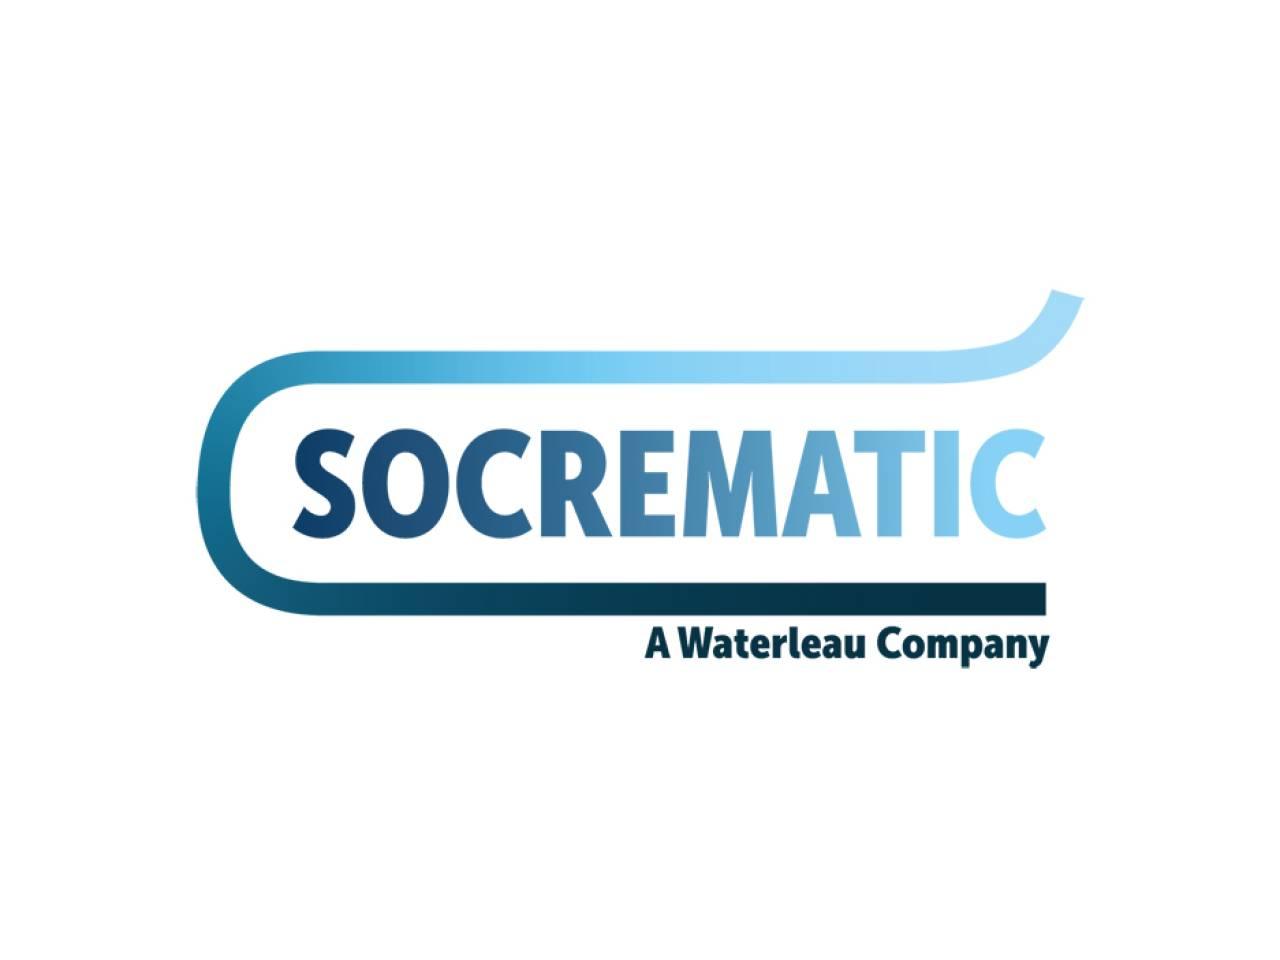 Socrematic